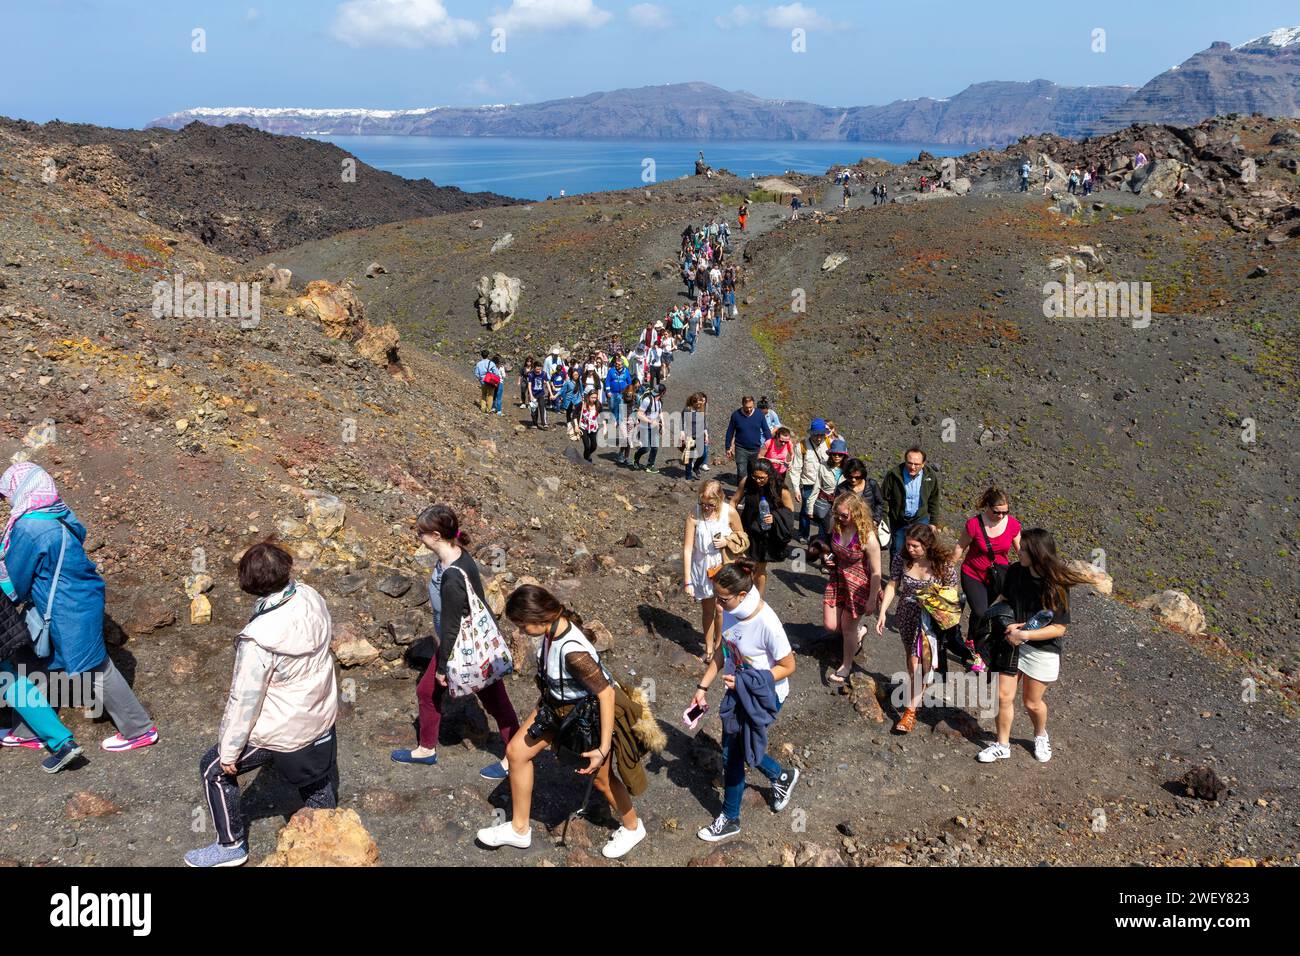 Touristes randonnant sur le volcan actif de l'île de Santorin, en Grèce. À l'arrière-plan, il y a le village pittoresque d'Oia. Banque D'Images